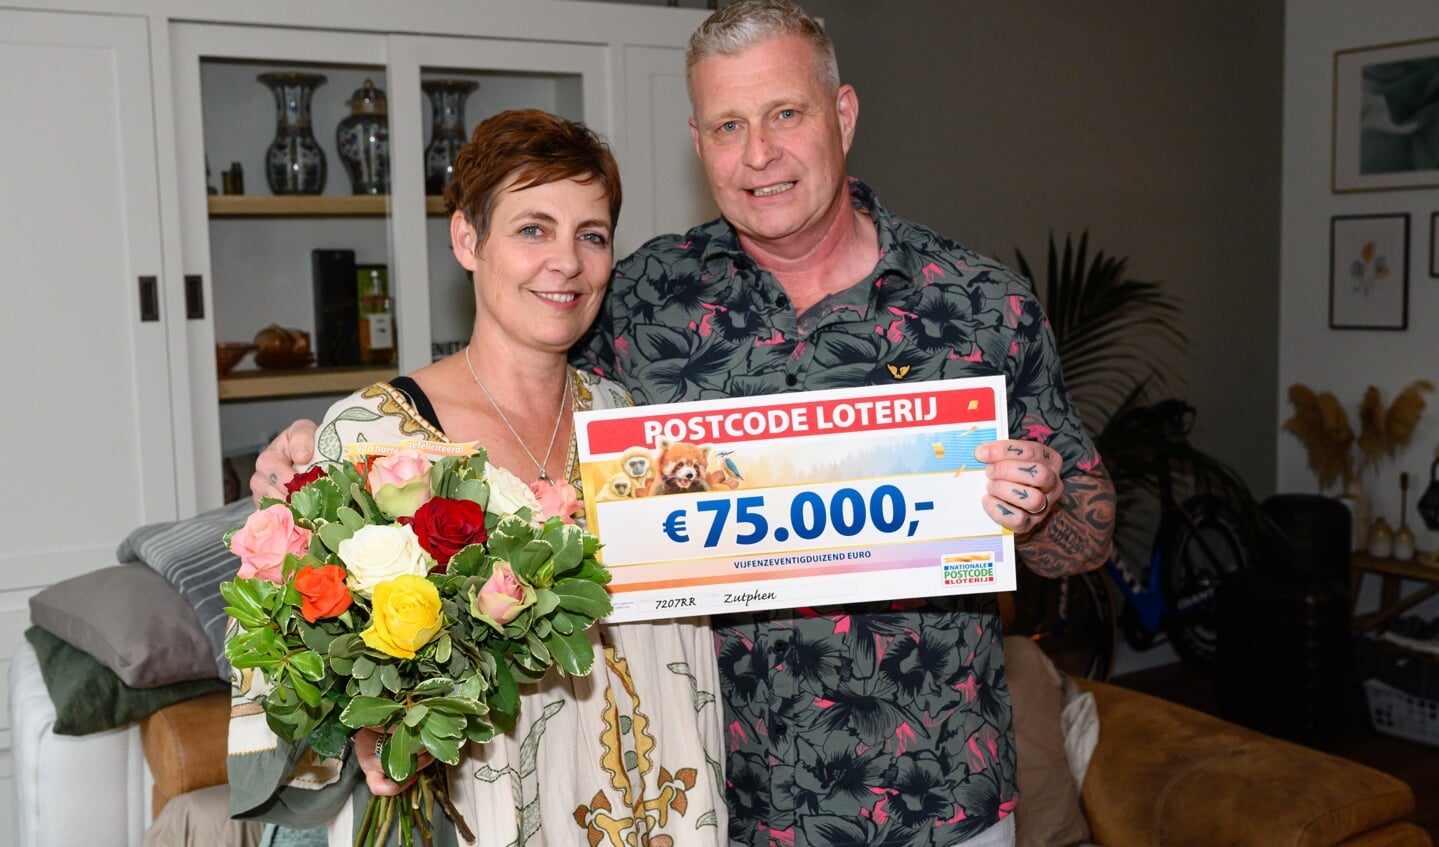 Kea en Ton winnen 75.000 euro bij de Postcode Loterij. Foto: Annemieke van der Togt